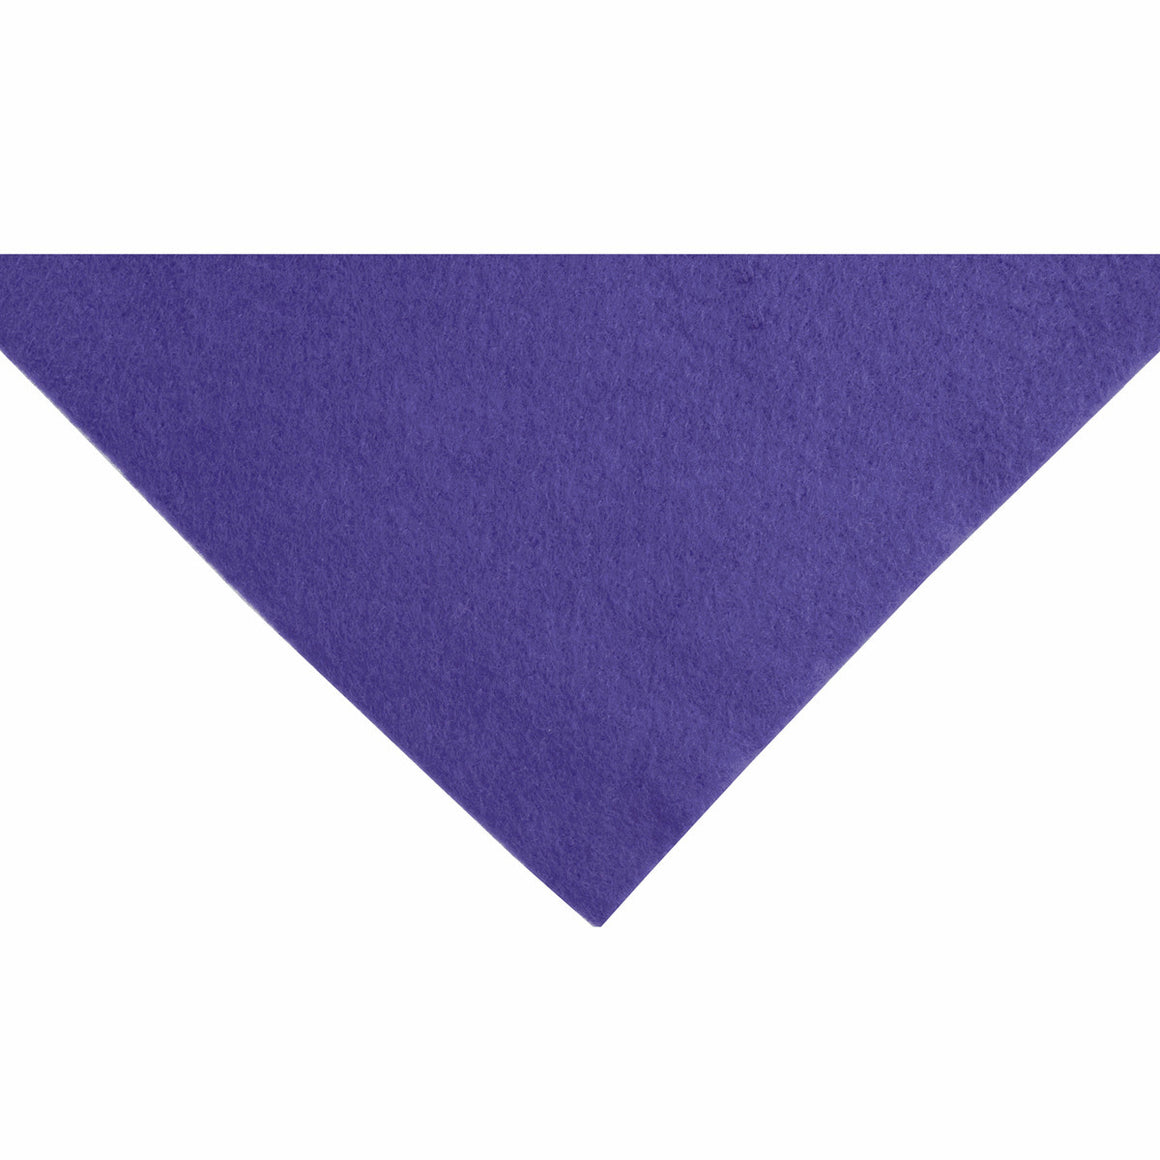 Purple Acrylic Felt - 1 x A4 sheet (23cm x 30cm | 9 x 12 inches)